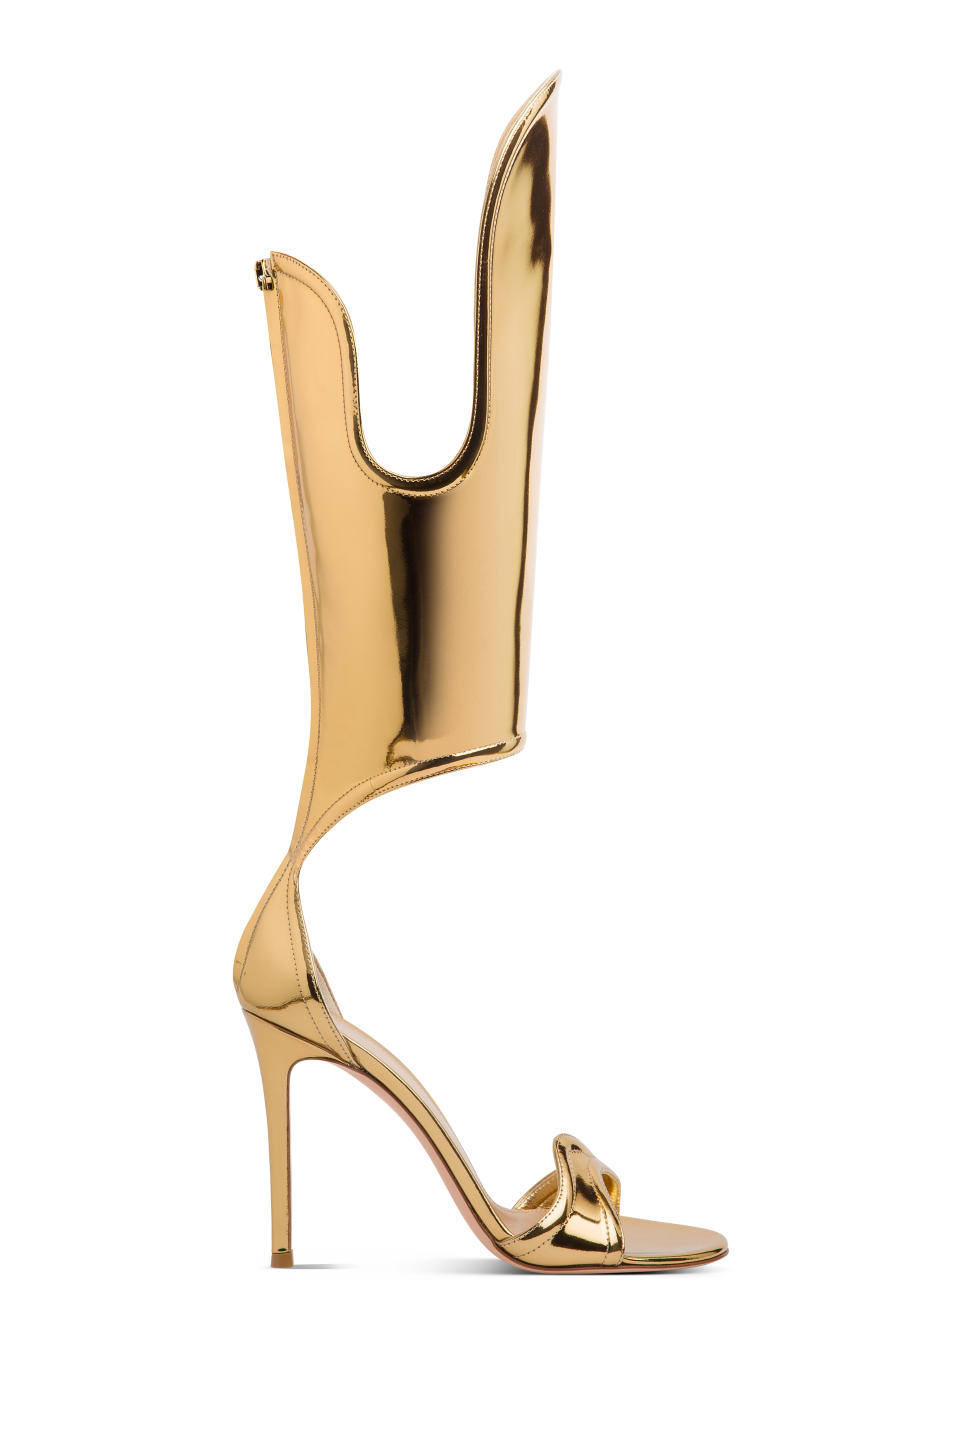 Gianvito Rossi gold stiletto sandal.